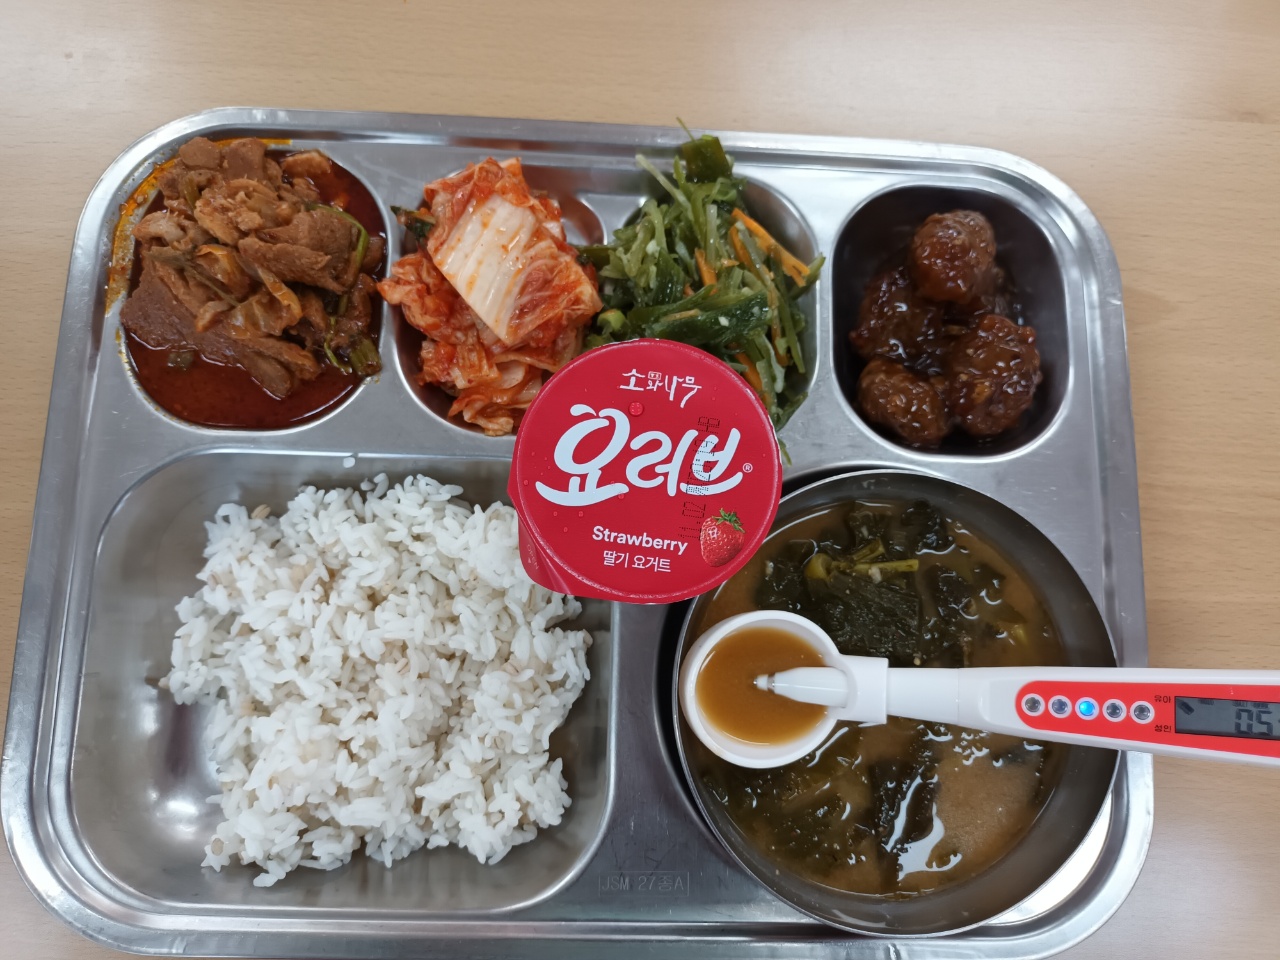 식단 보리밥 무시래기국 오리고기볶음  미트볼조림 미역줄기나물  배추김치  요거트